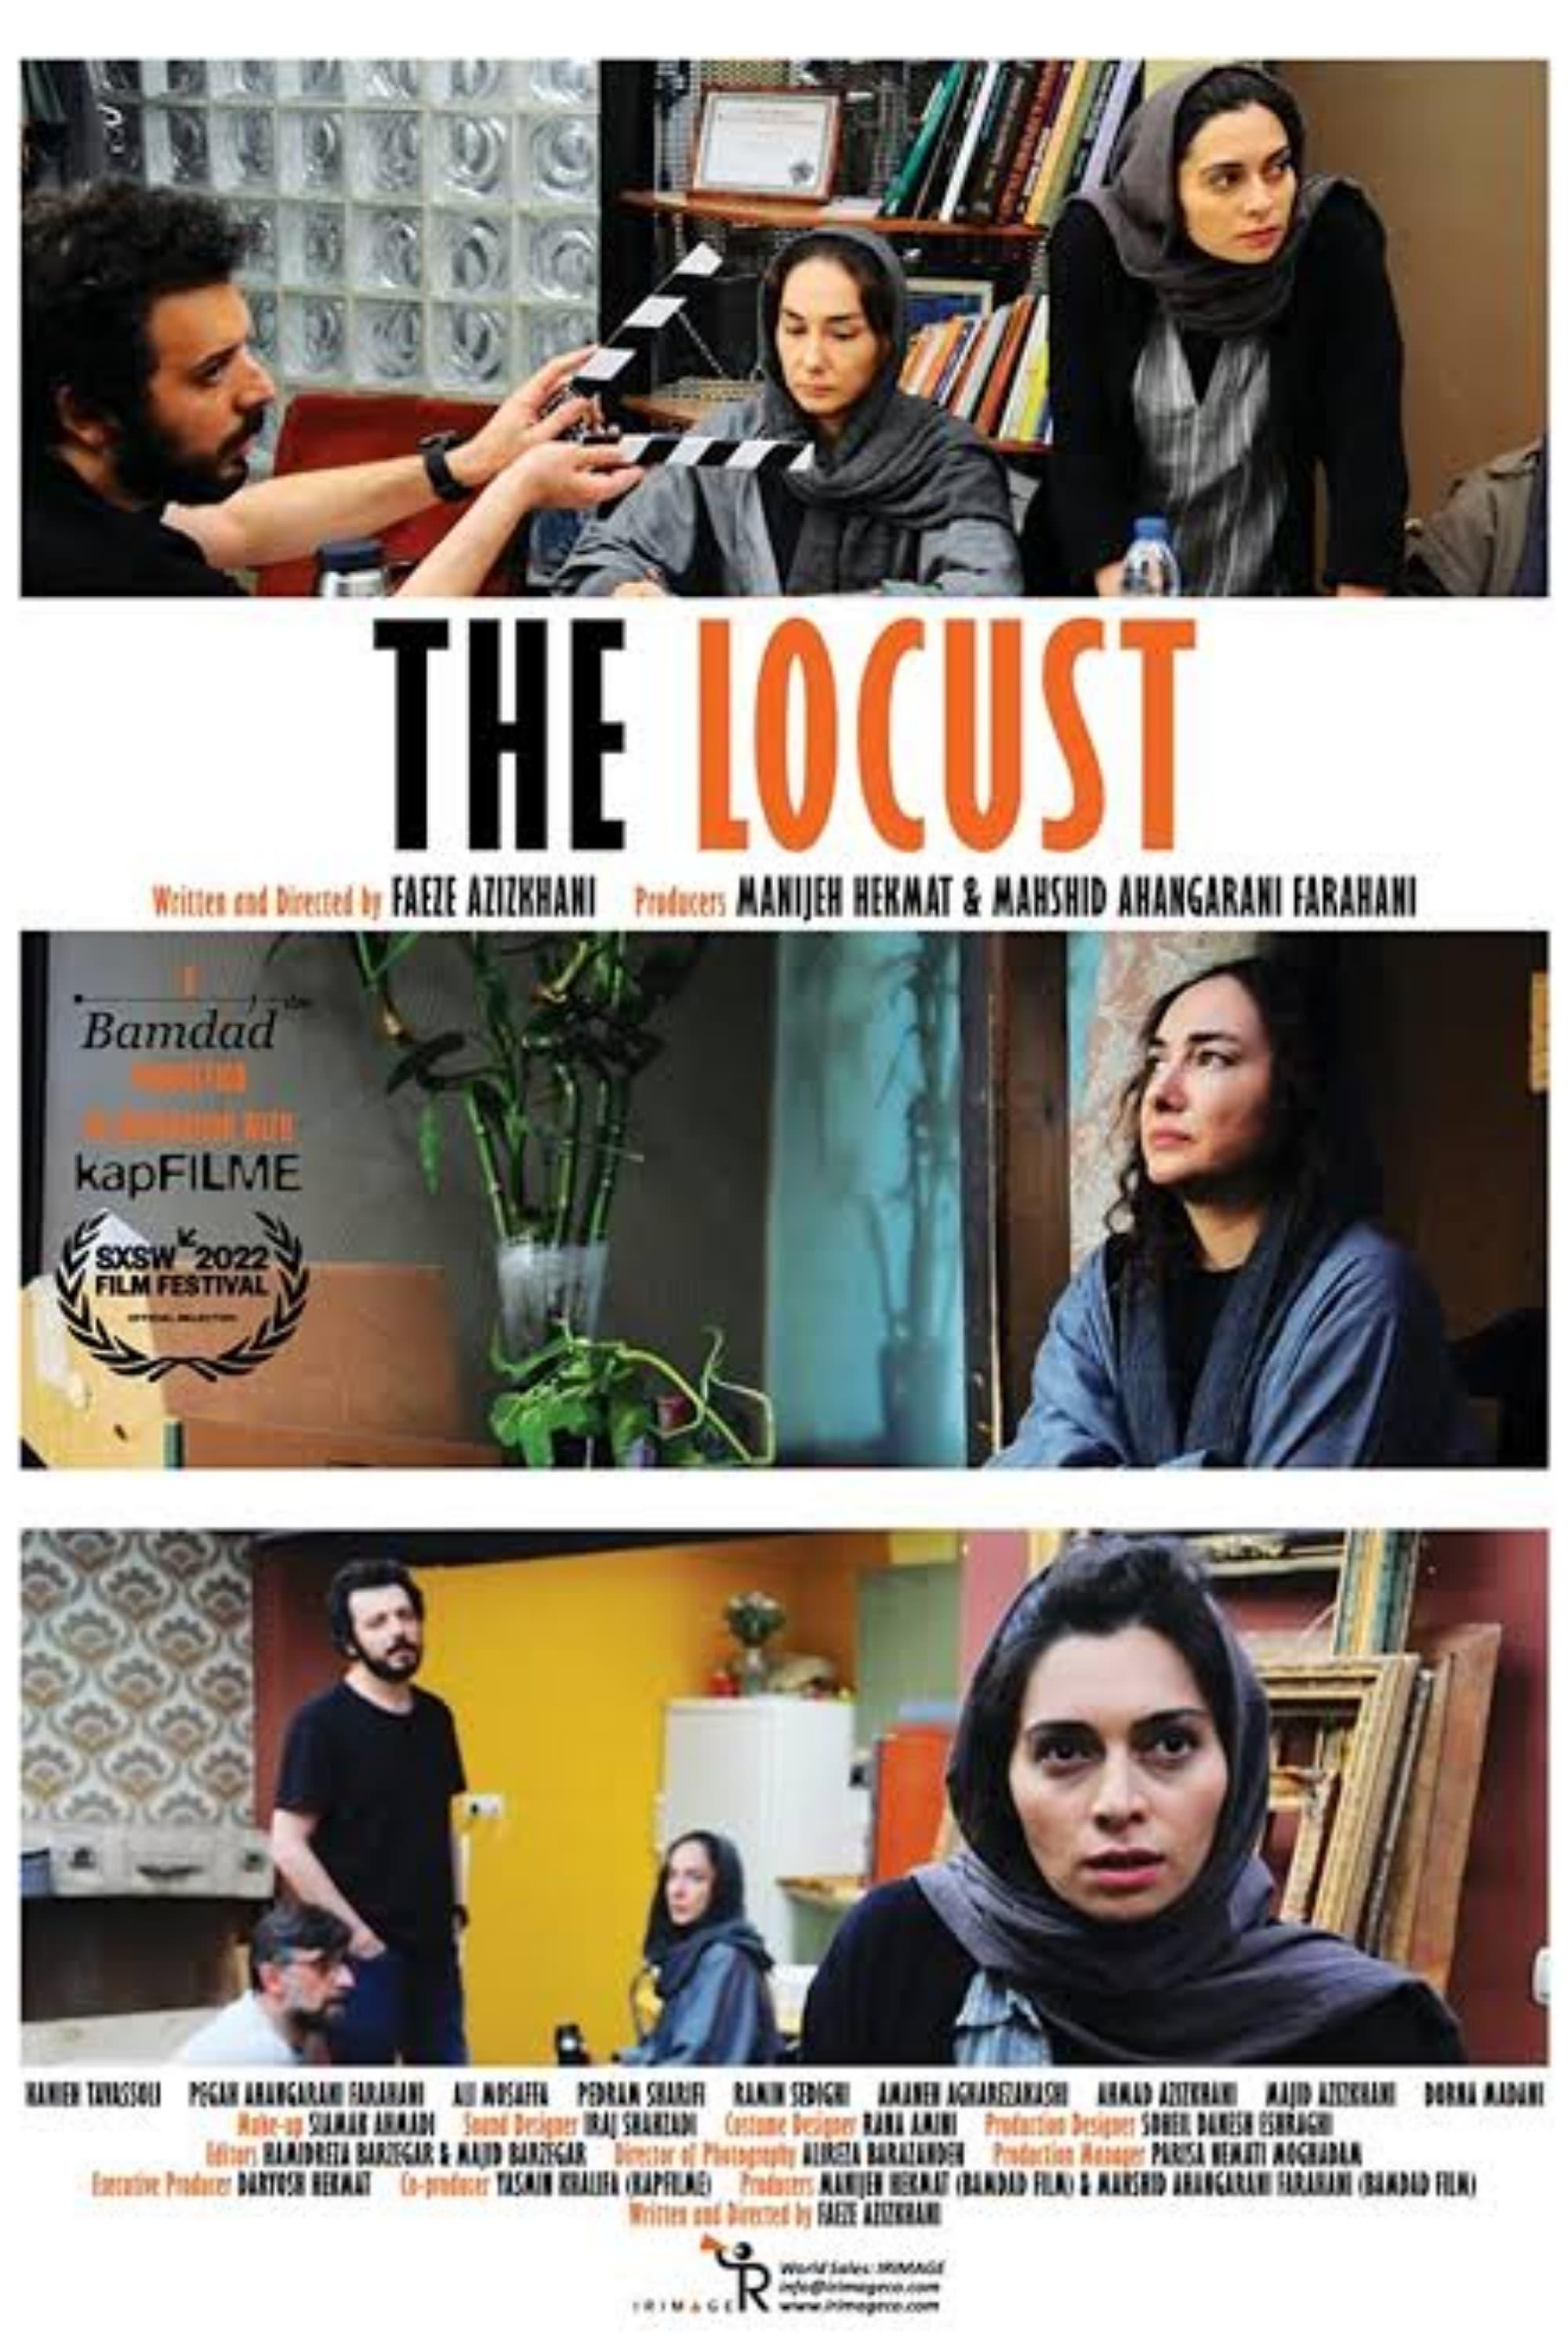 The Locust poster